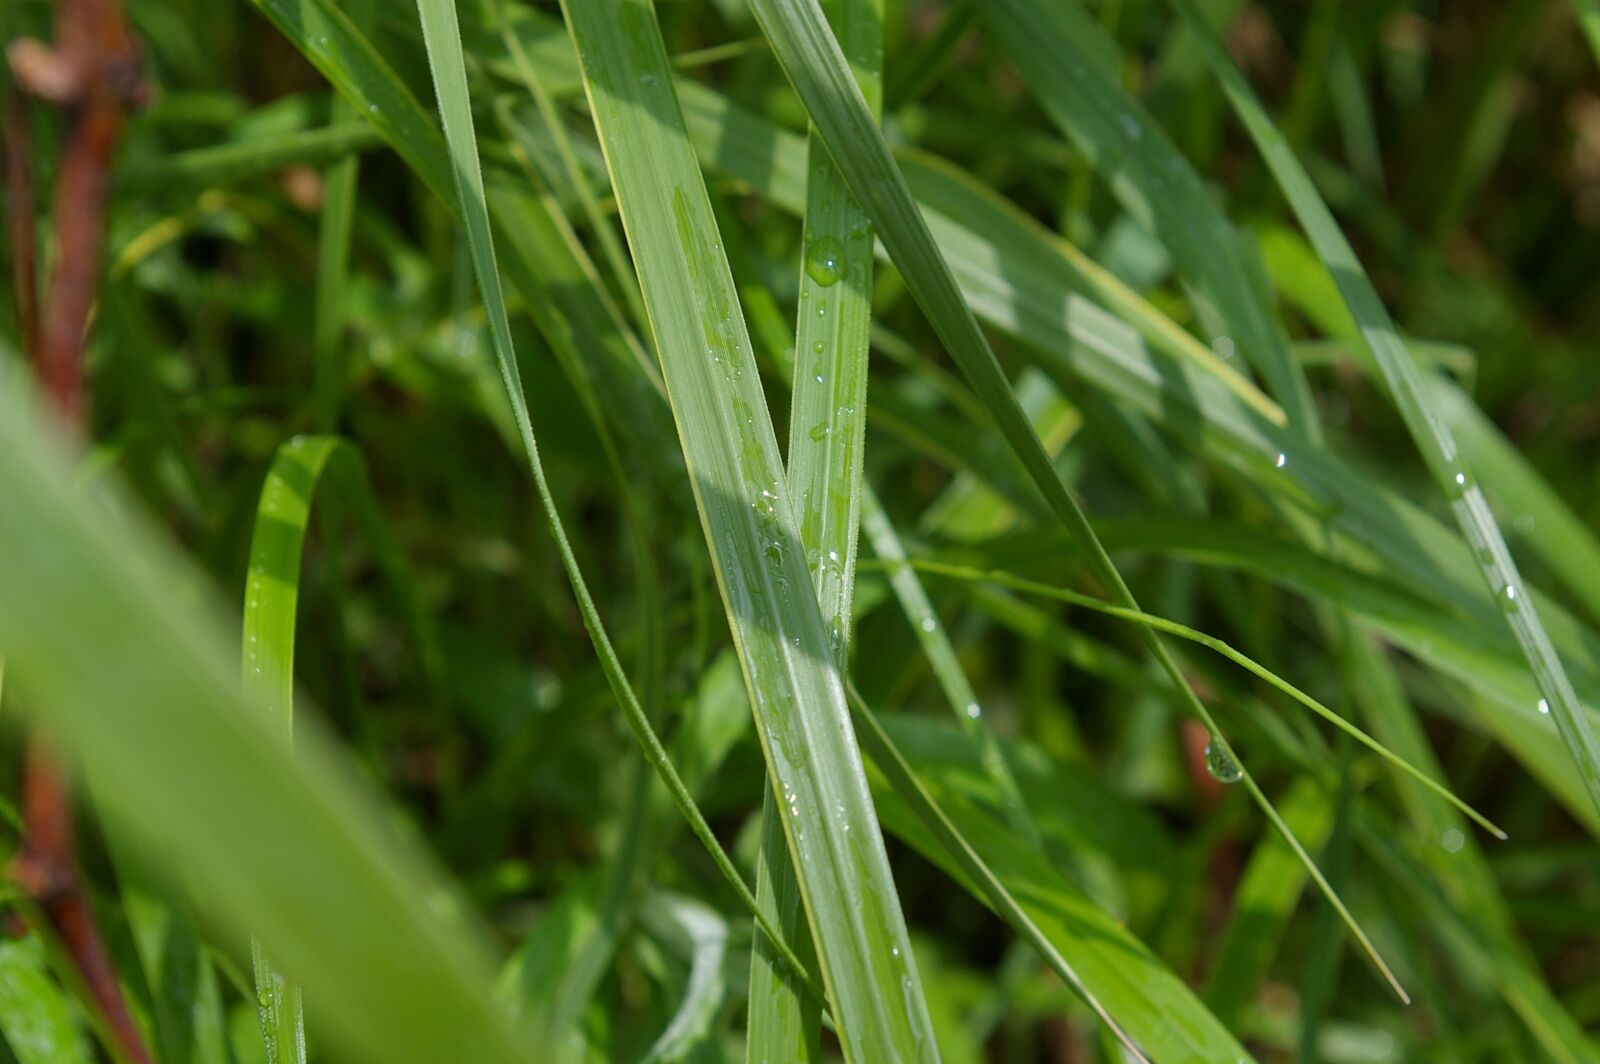 Pentax *ist DL sample photo. Zen, tall grass, water photography